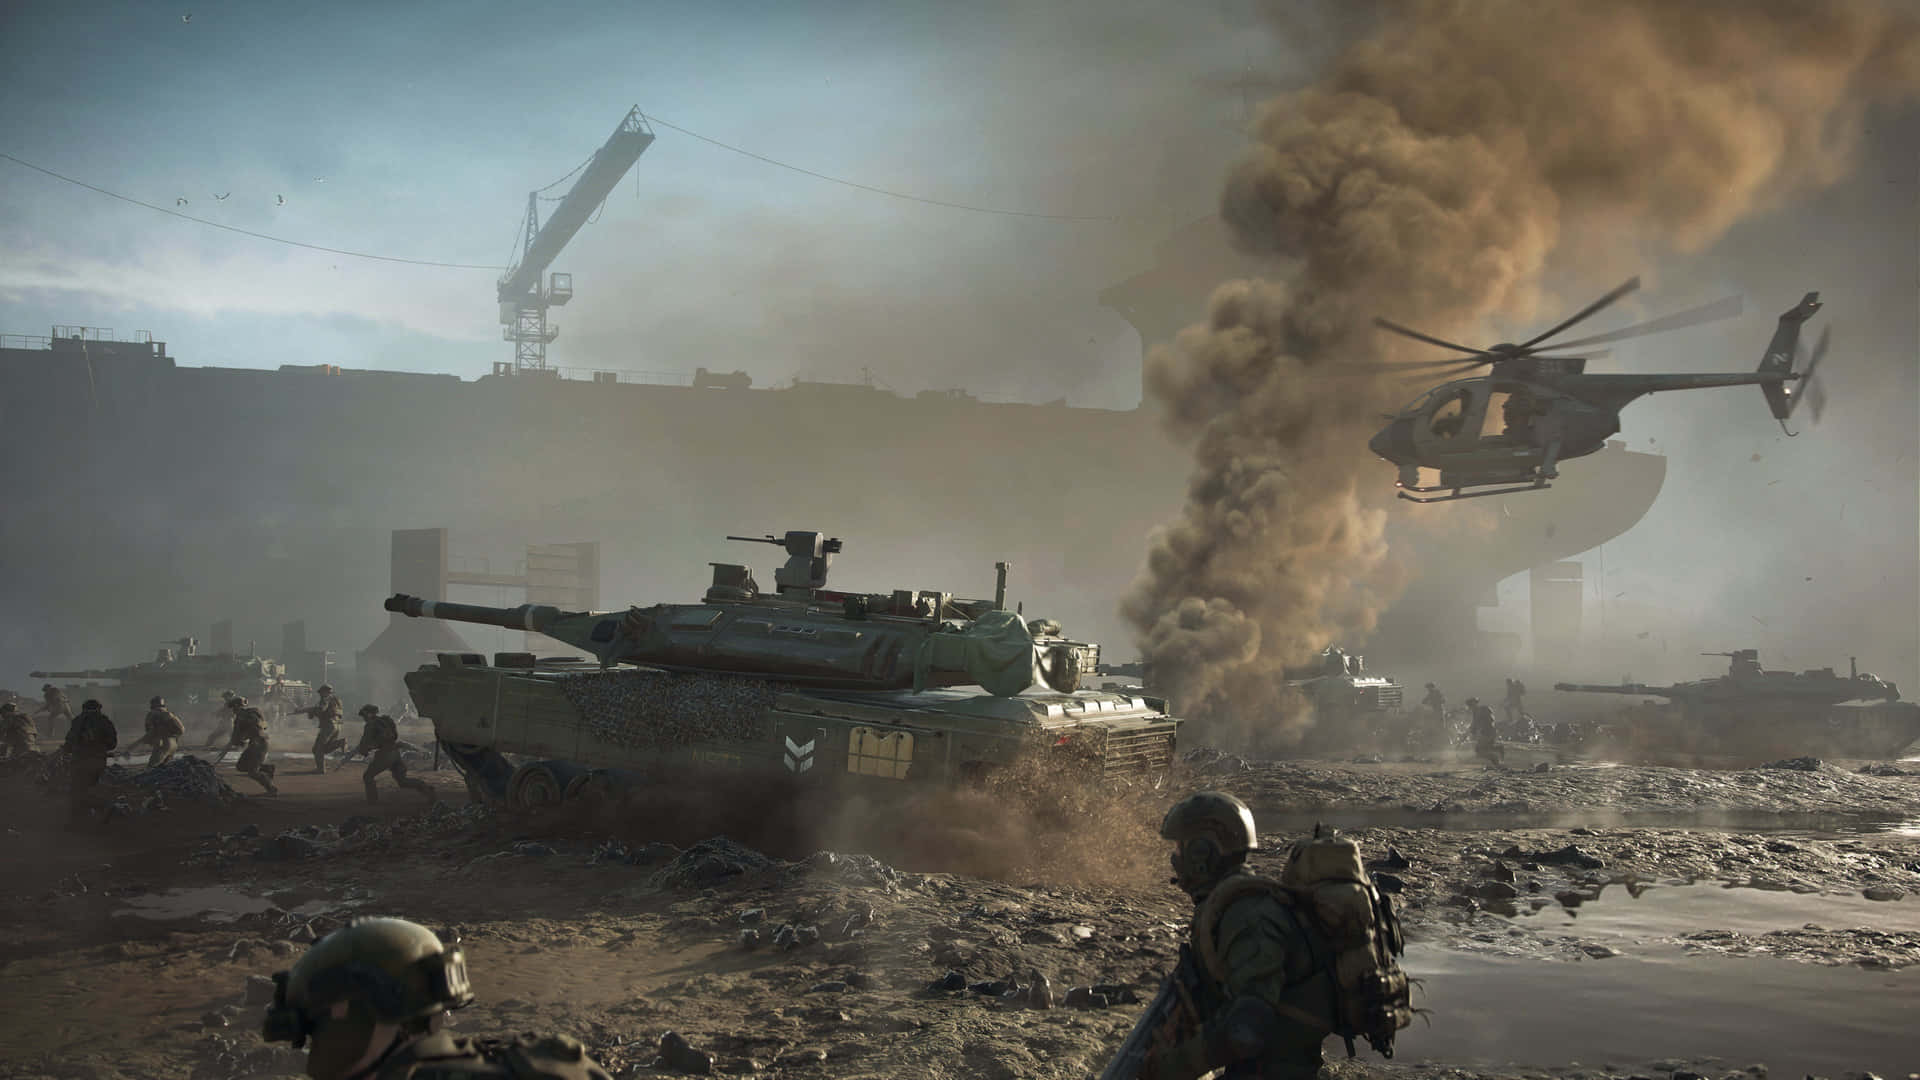 Sejr slaget i ultra-høj opløsning med Battlefield 4K. Wallpaper